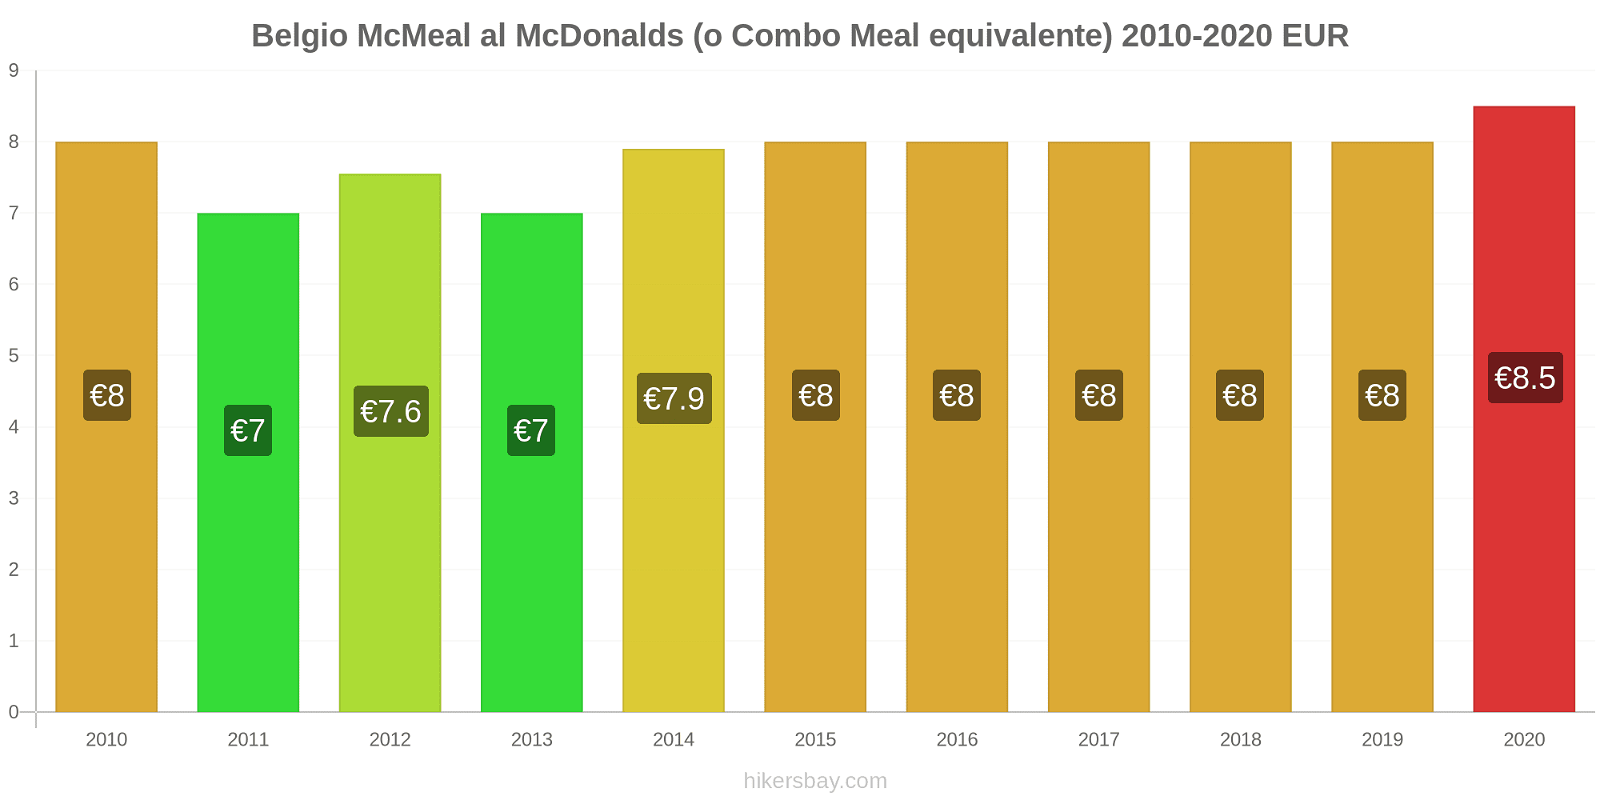 Belgio variazioni di prezzo McMeal al McDonalds (o in un equivalente fastfood) hikersbay.com